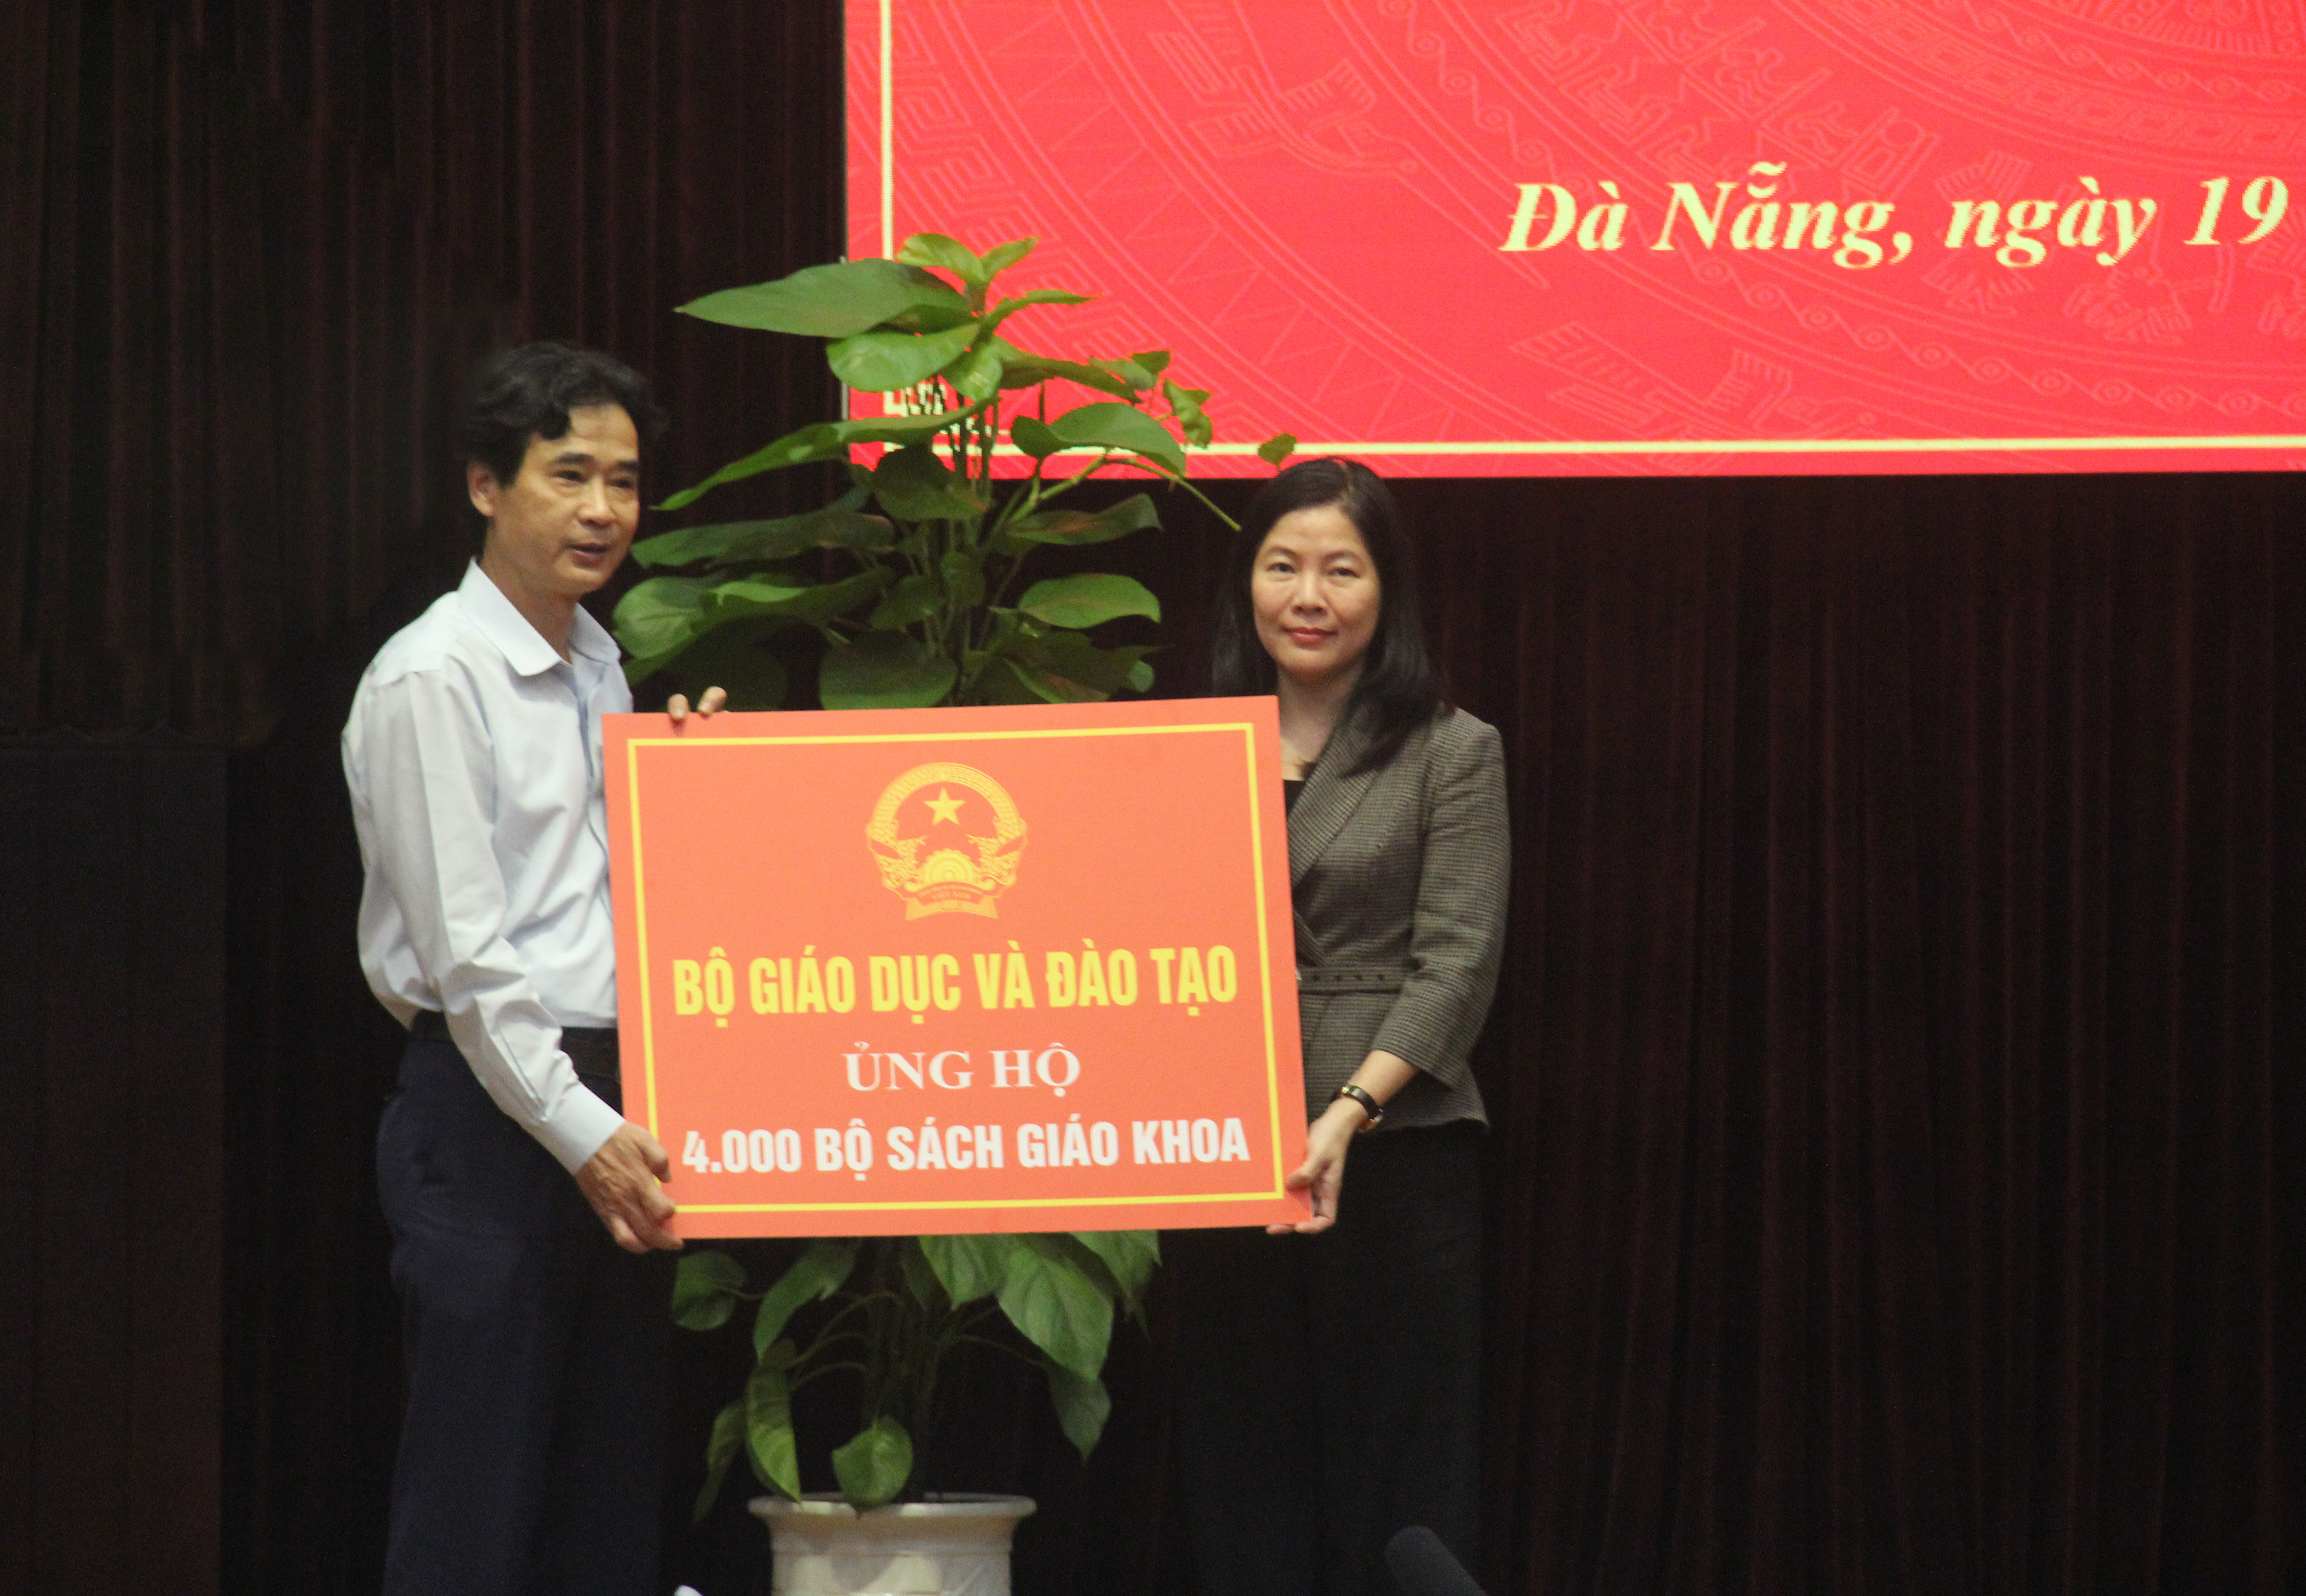 Tặng 4.000 bộ sách giáo khoa cho học sinh Đà Nẵng